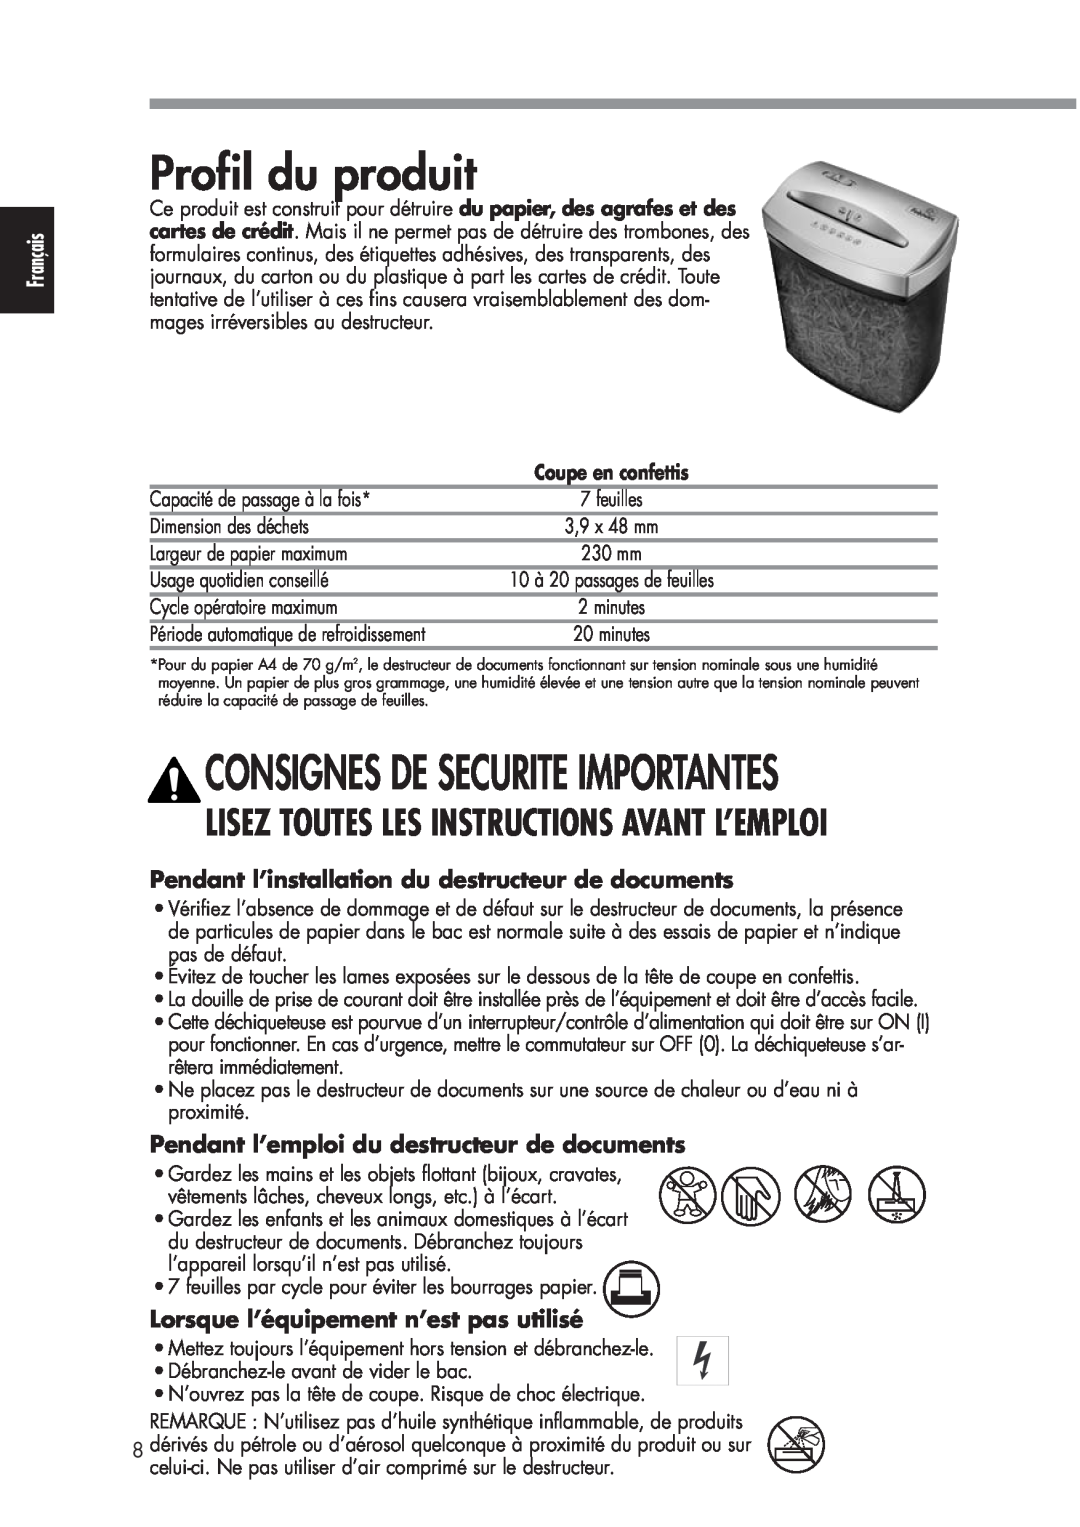 Fellowes P70CM Profil du produit, Pendant l’installation du destructeur de documents, Consignes De Securite Importantes 